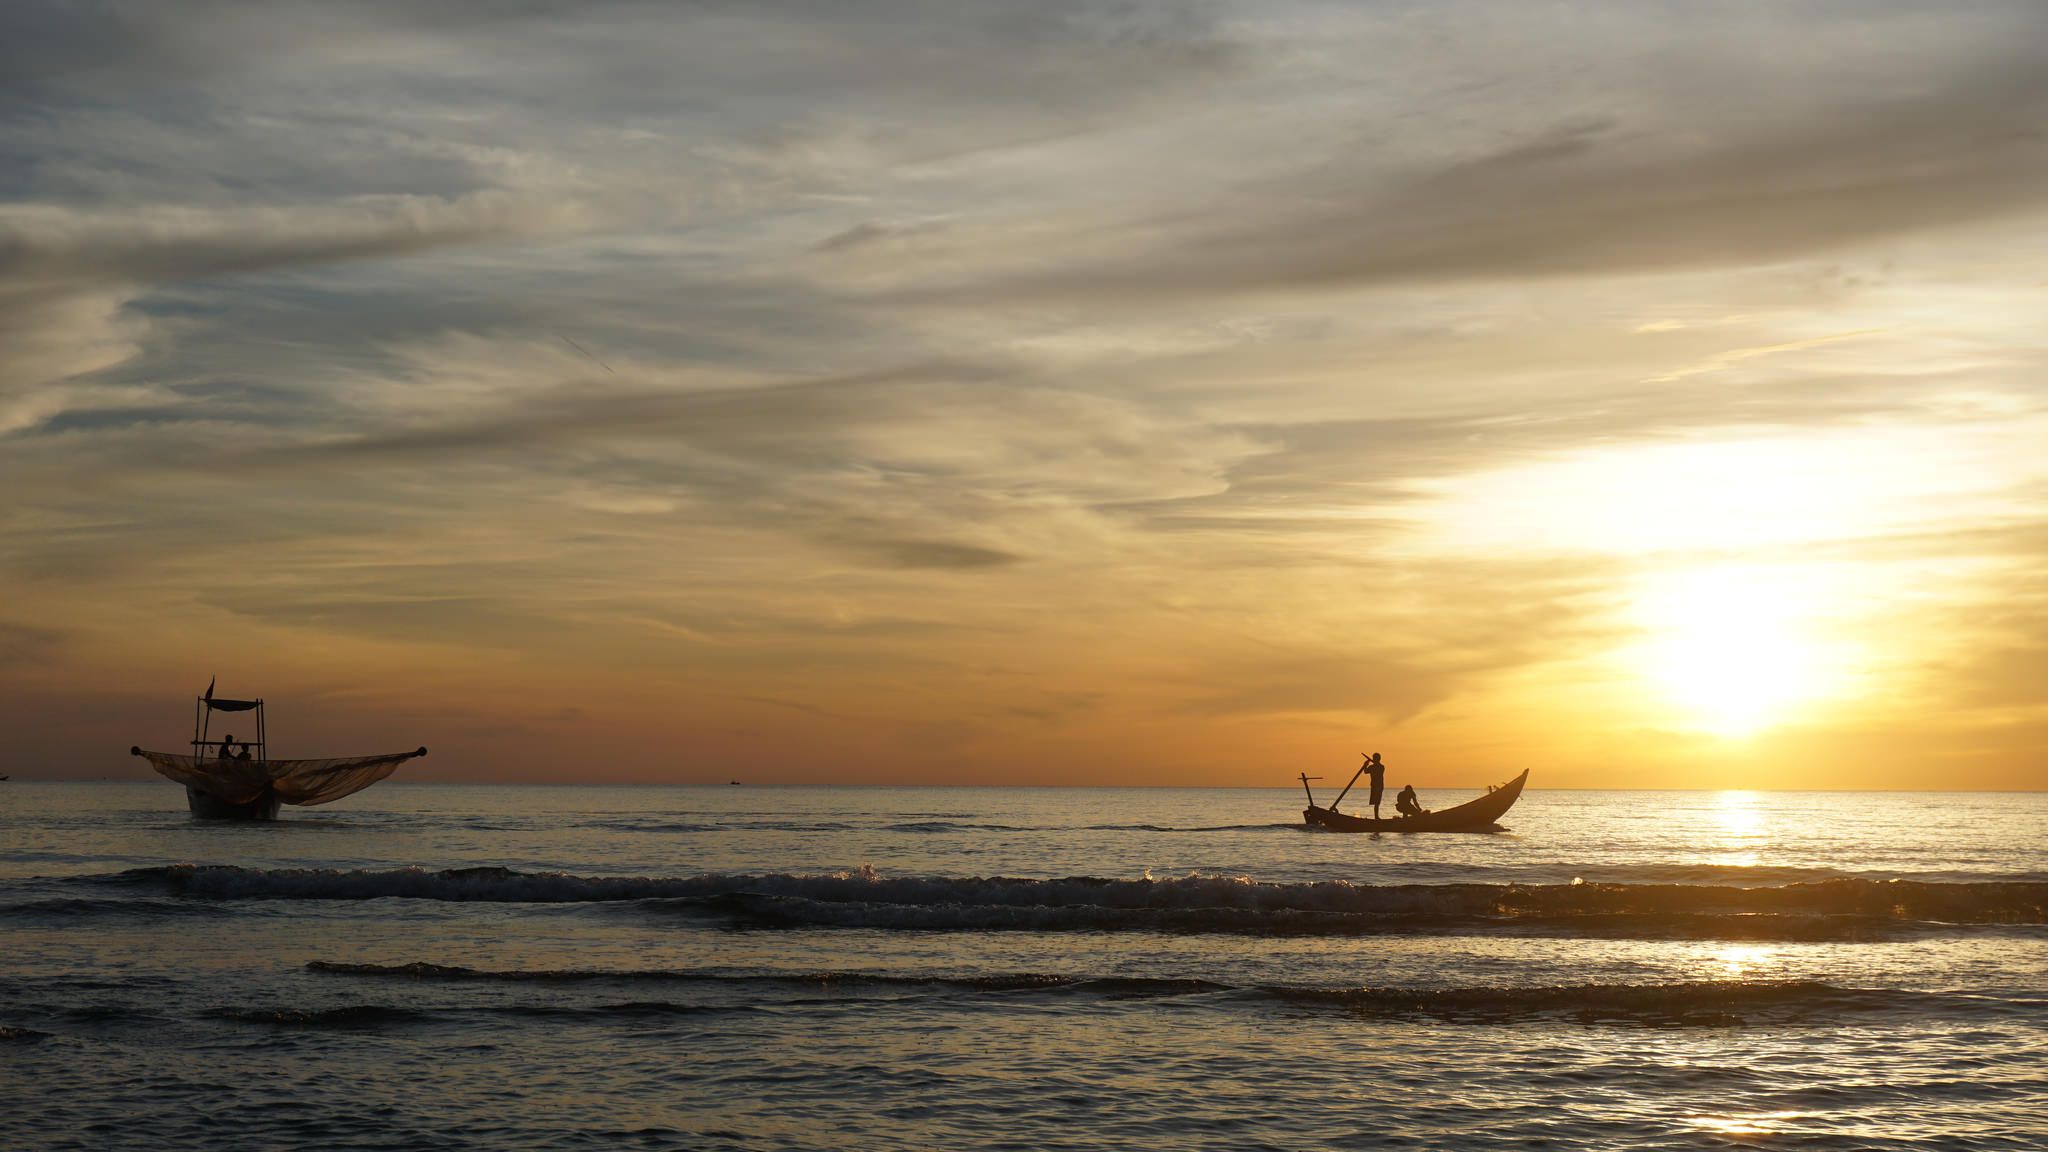 Biển Nhật Lệ Quảng Bình - Một Trong 10 Bãi Biển Đẹp Nhất Việt Nam